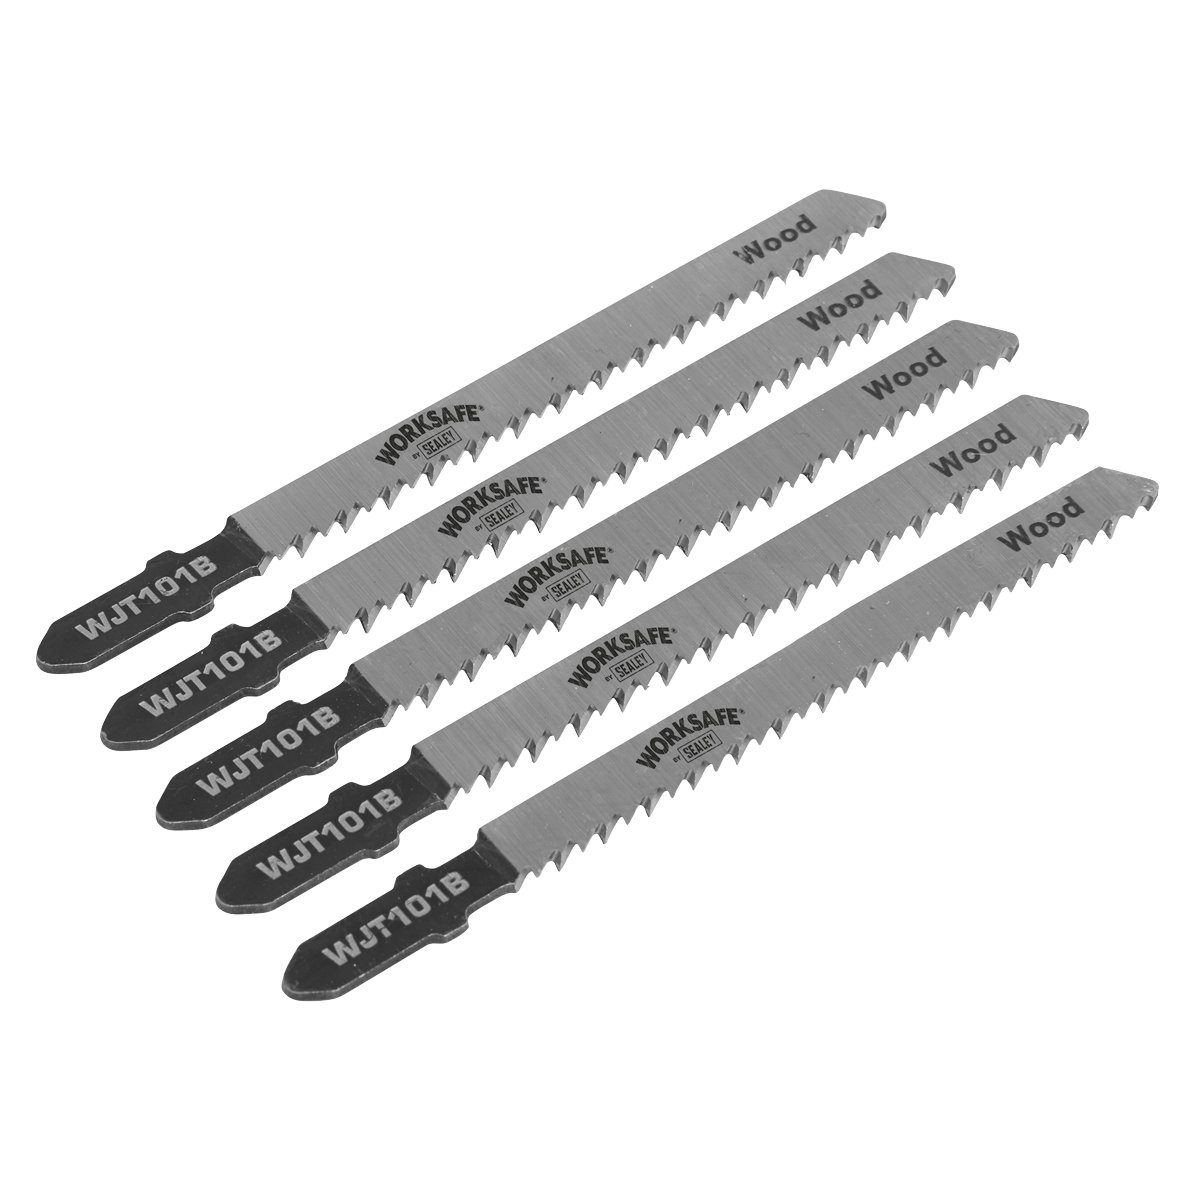 Jigsaw Blade Wood & Plastics 75mm 10tpi - Pack of 5 - WJT101B - Farming Parts